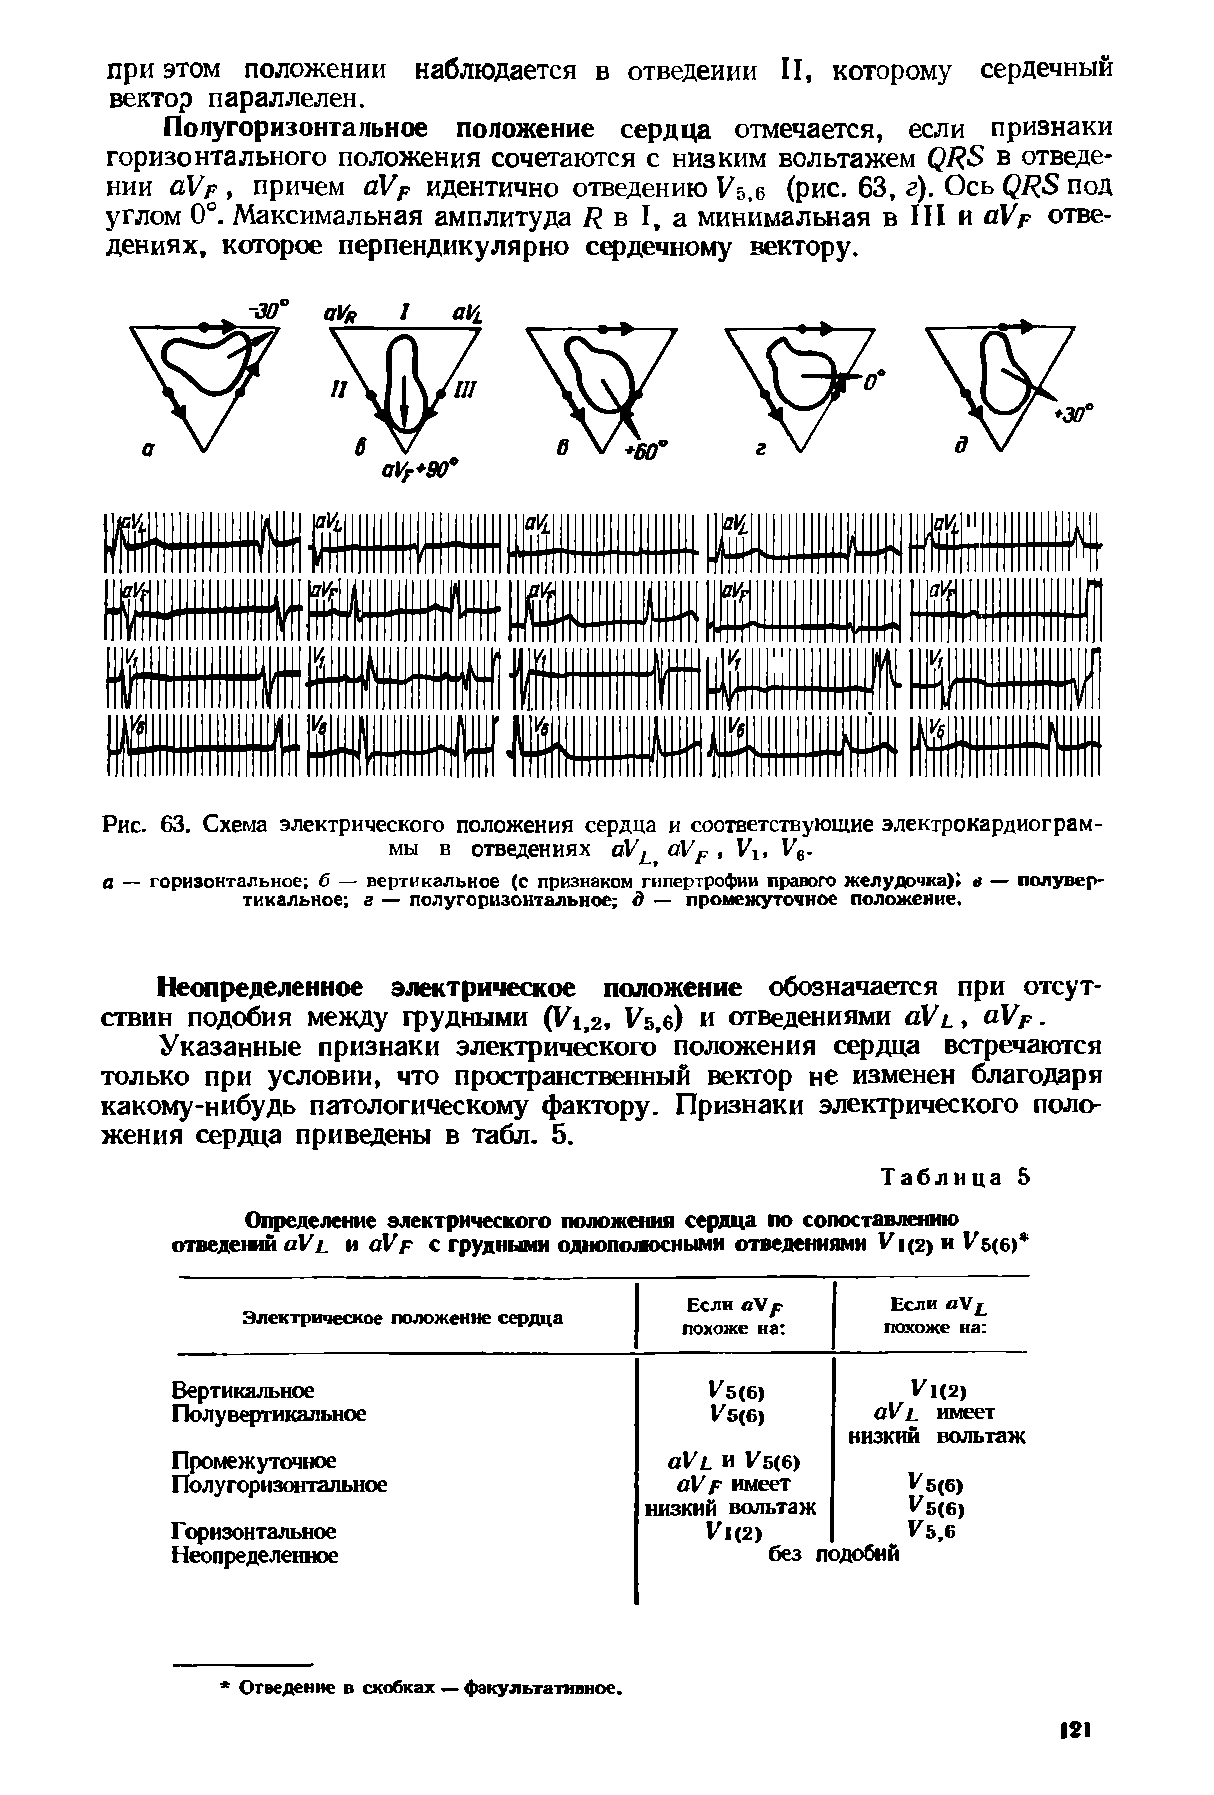 Рис. 63. Схема электрического положения сердца и соответствующие электрокардиограммы в отведениях оУ аУР, Уг, Ув.